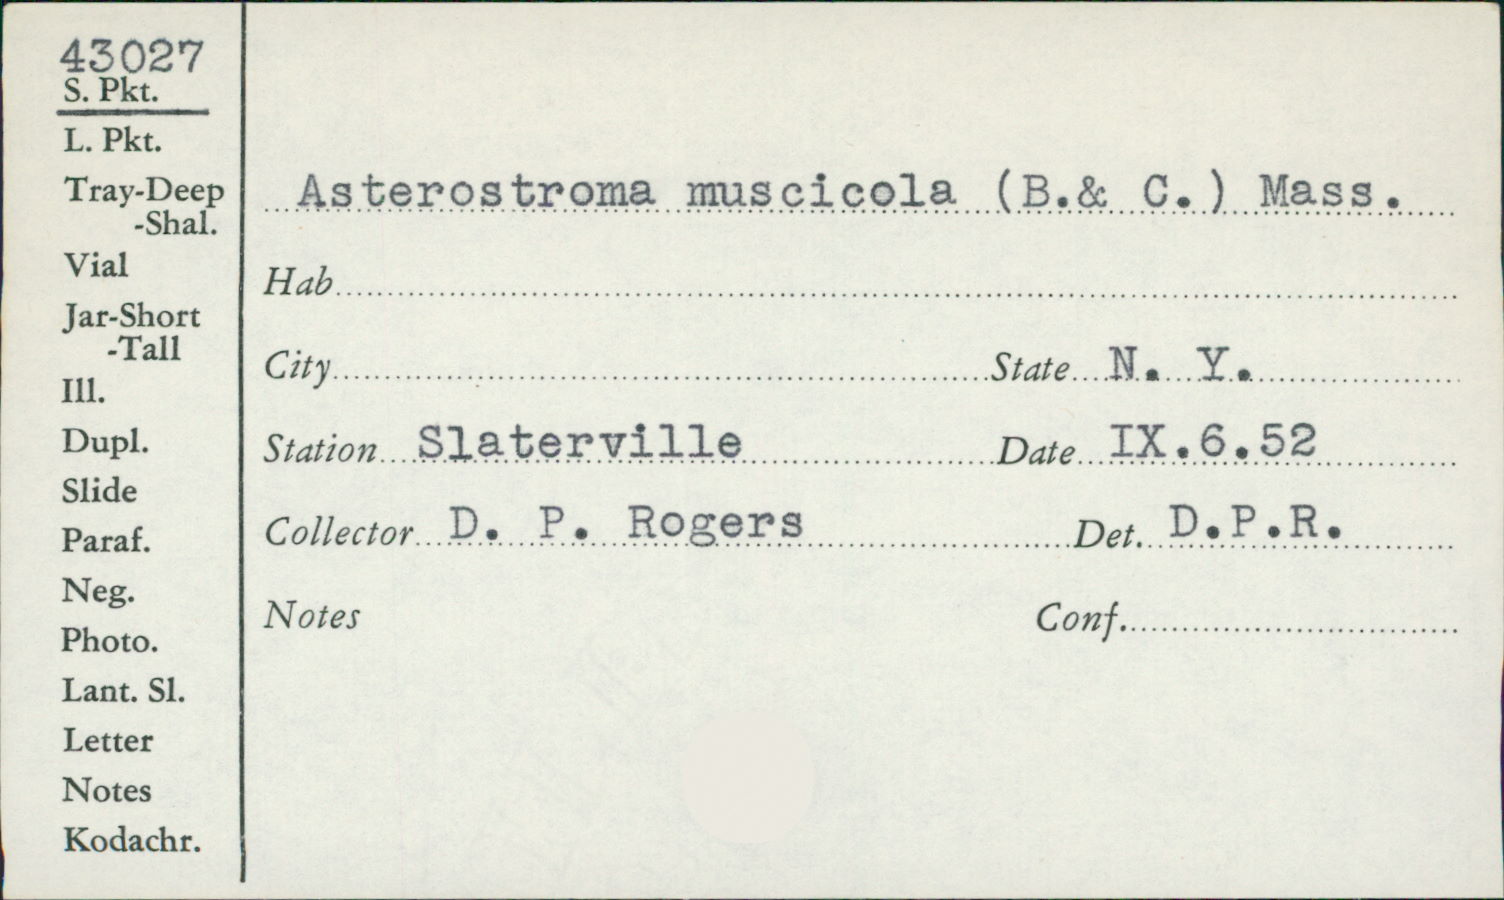 Asterostroma muscicola image